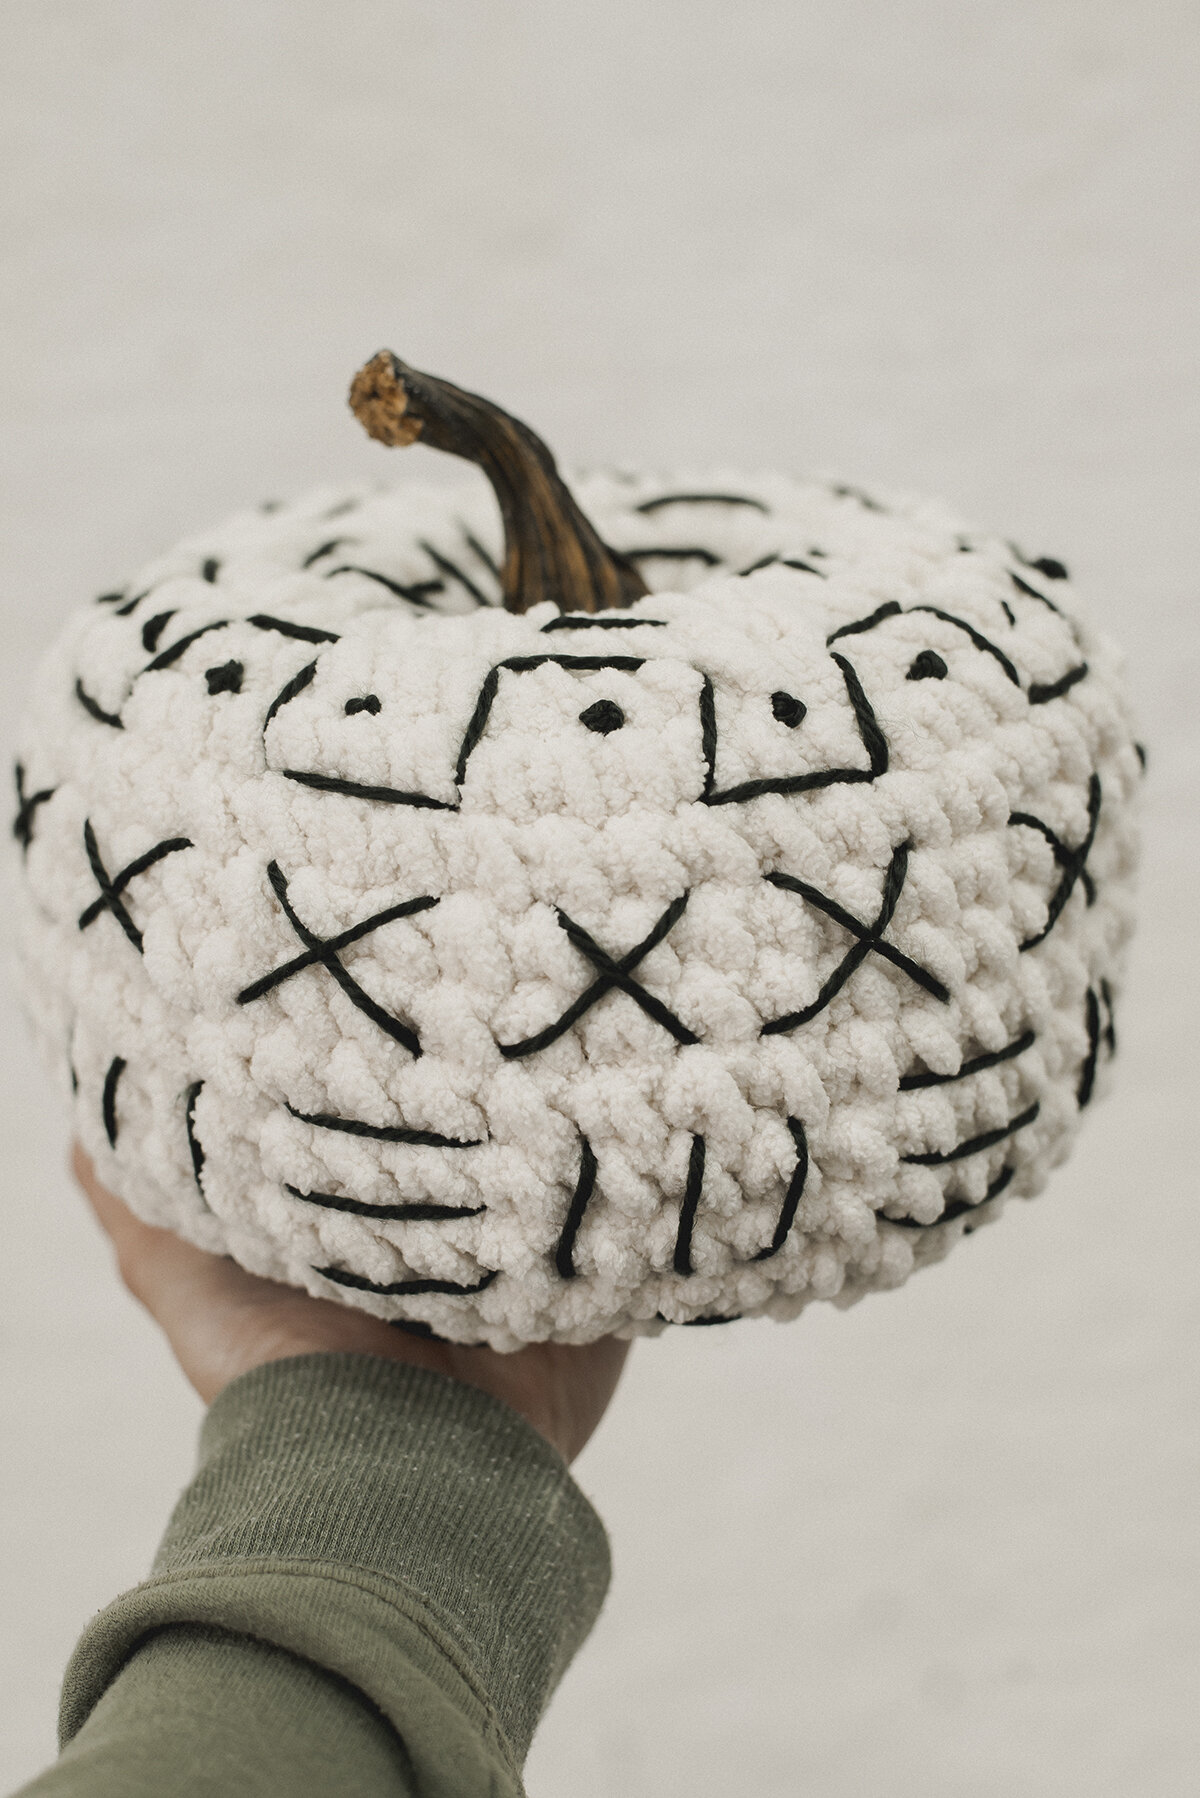 Crochet Pattern- The Wavel Pumpkin — Meghan Makes Do